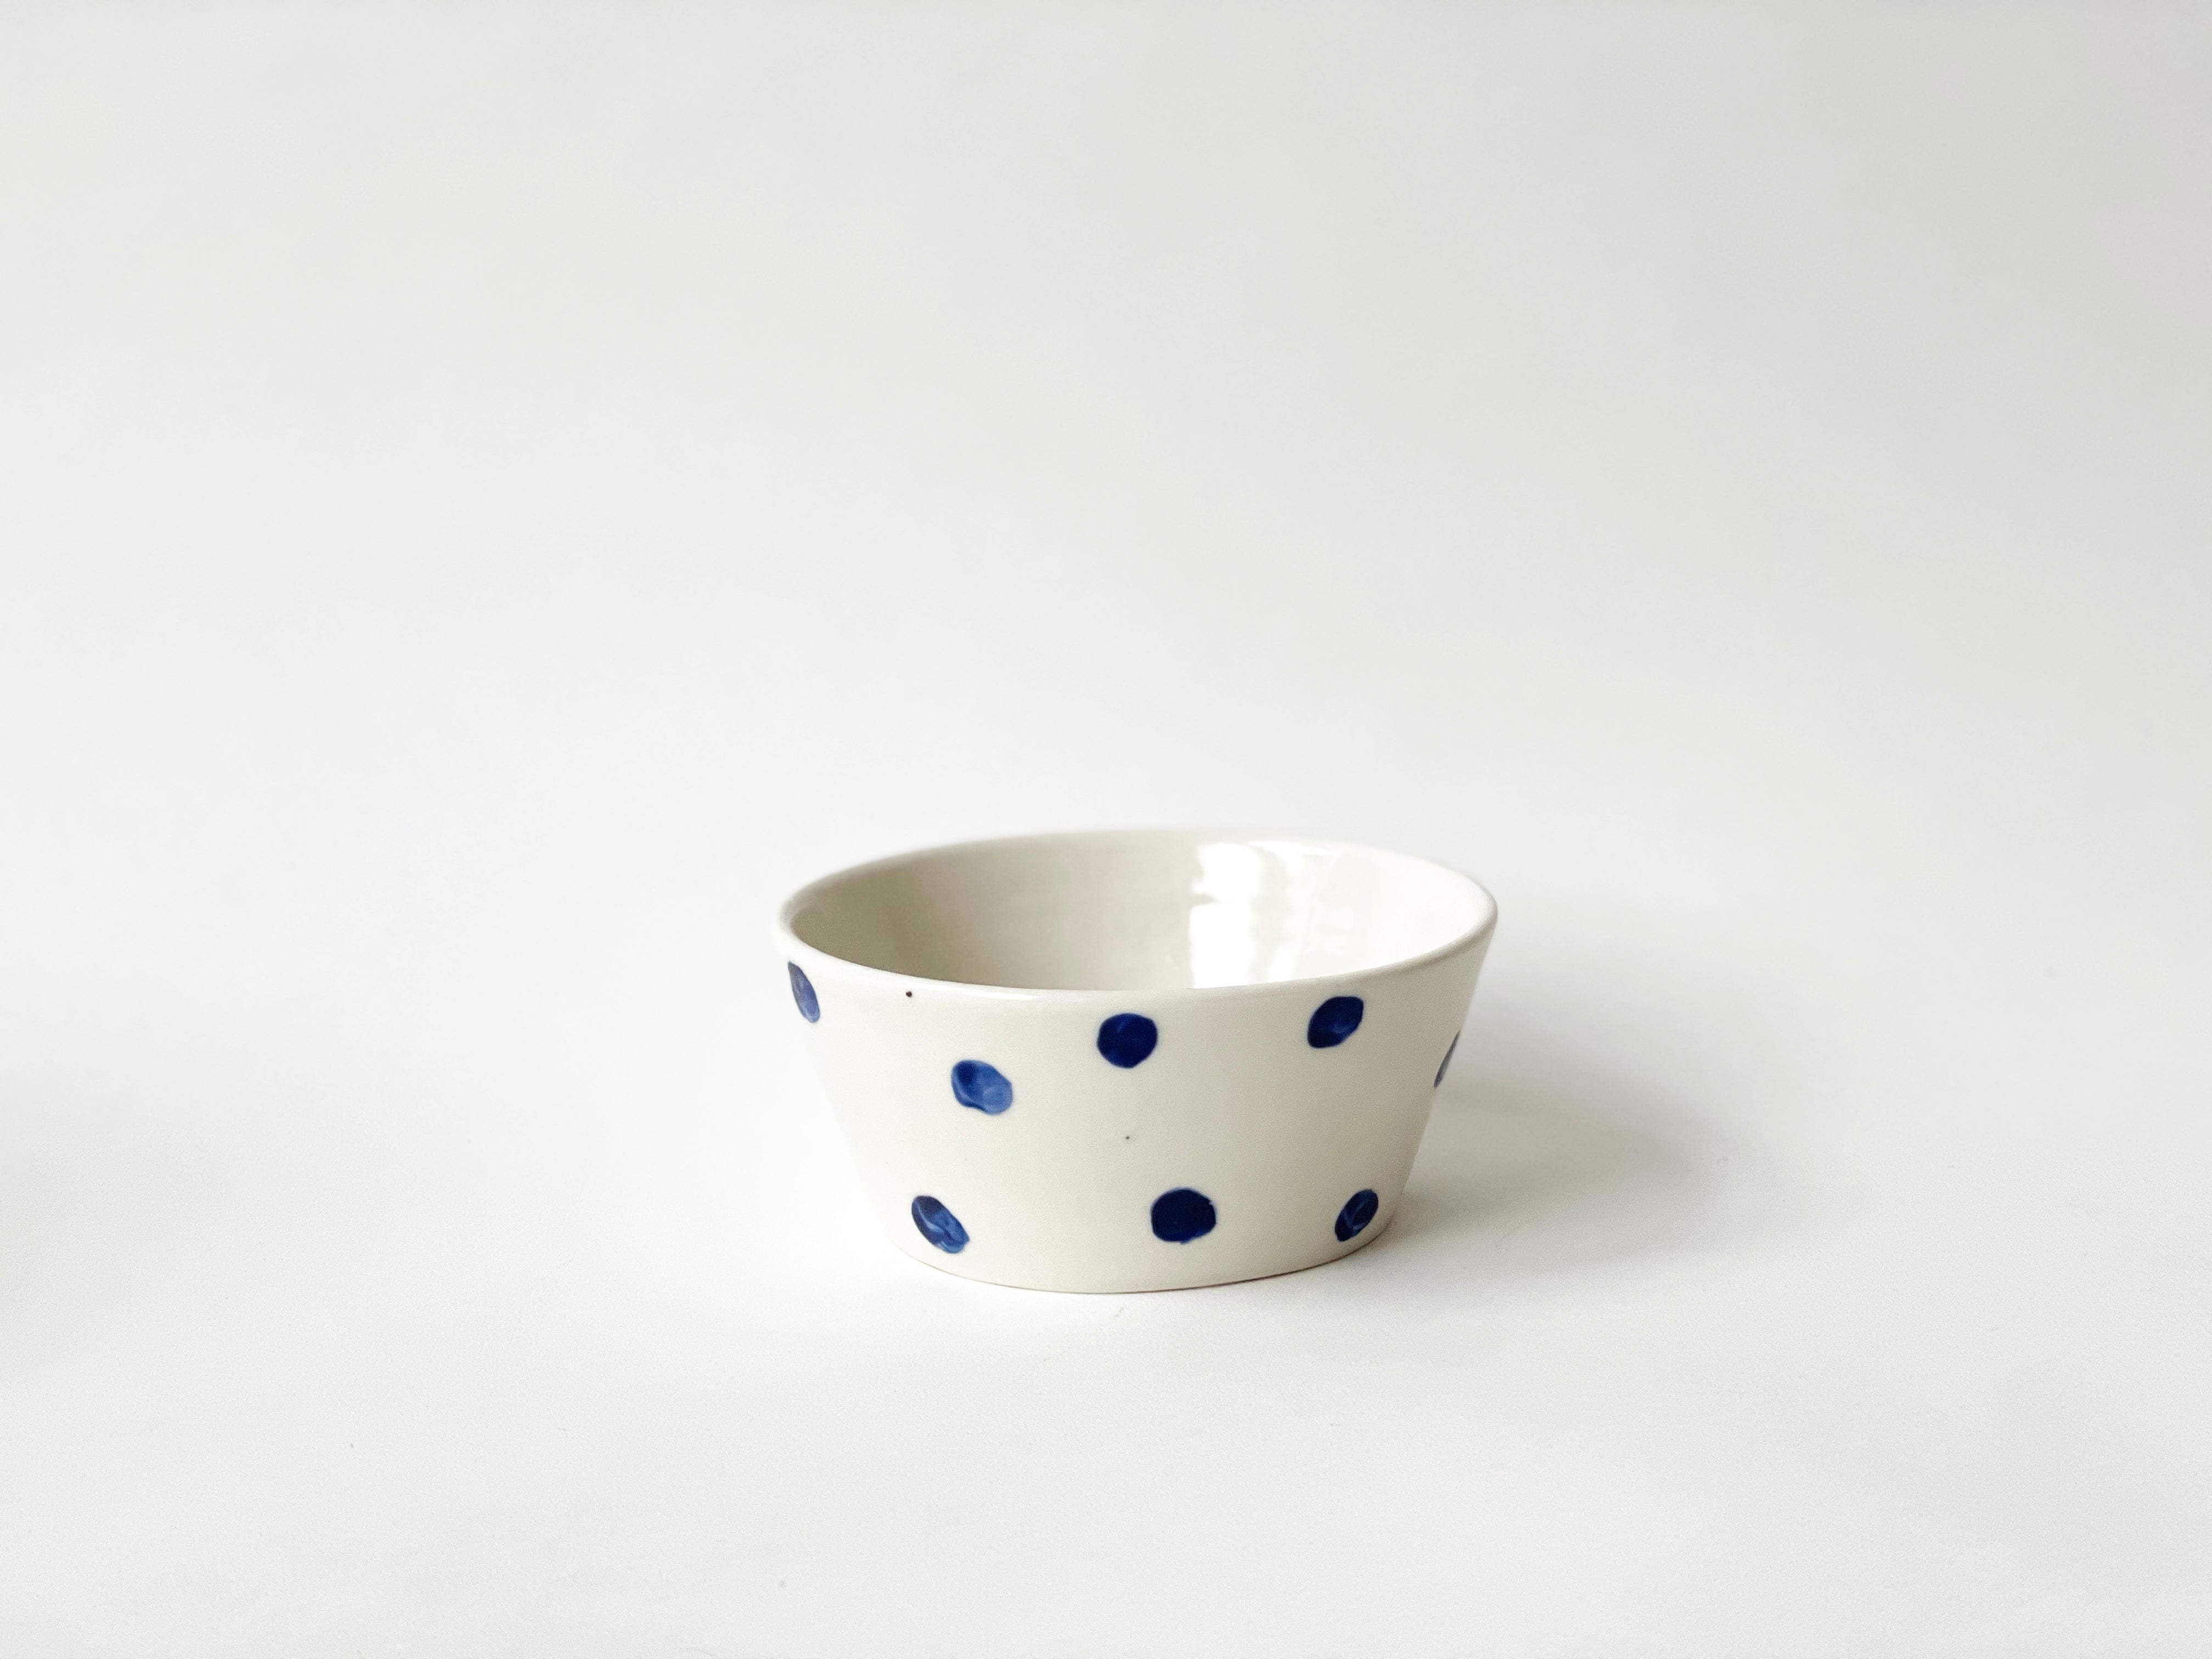 Porcelain Classic Blue Bowl